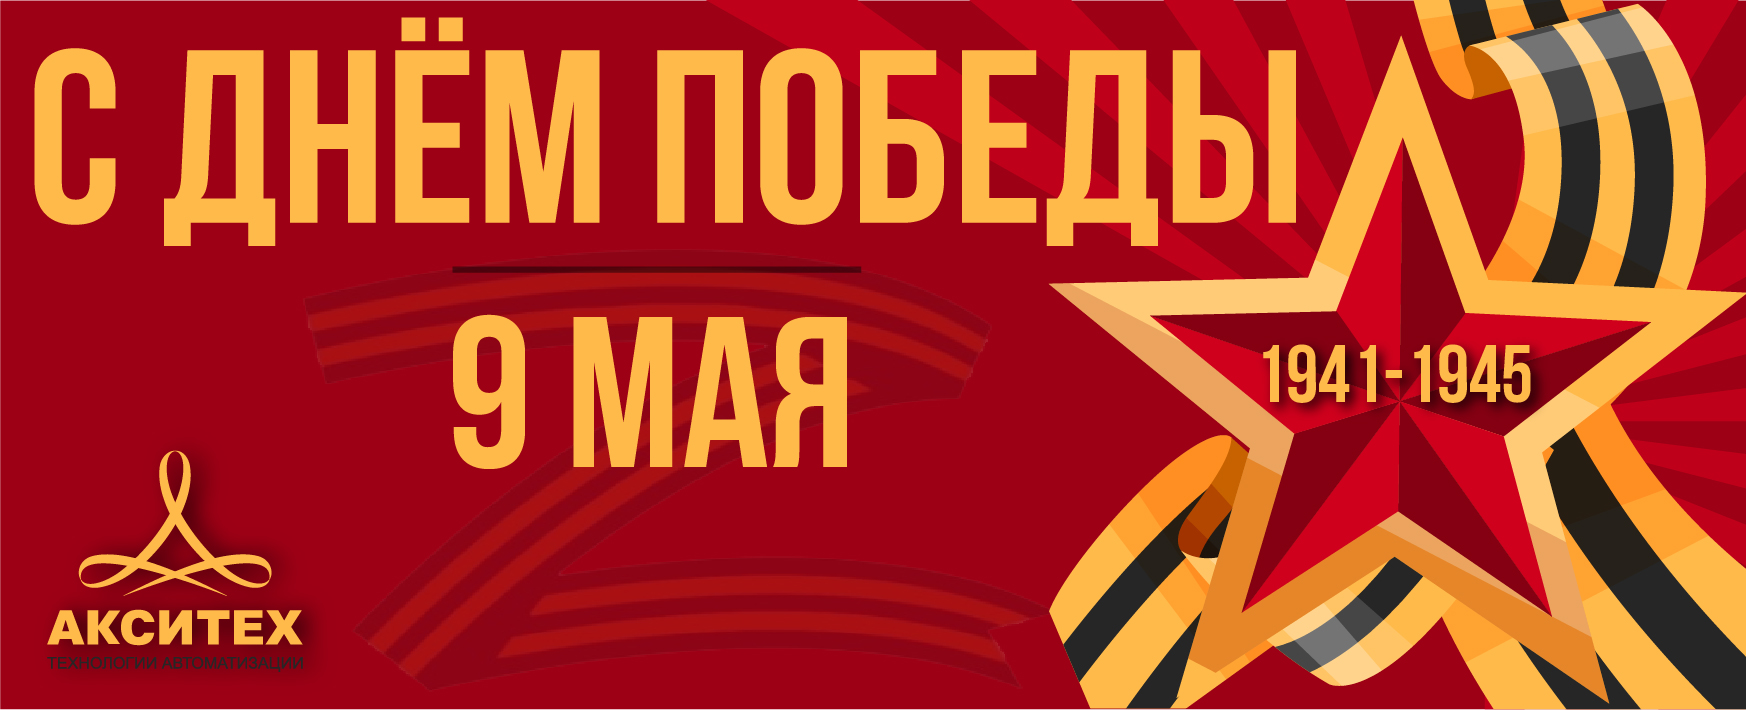 Коллектив «АКСИТЕХ» поздравляет с Днем Победы!